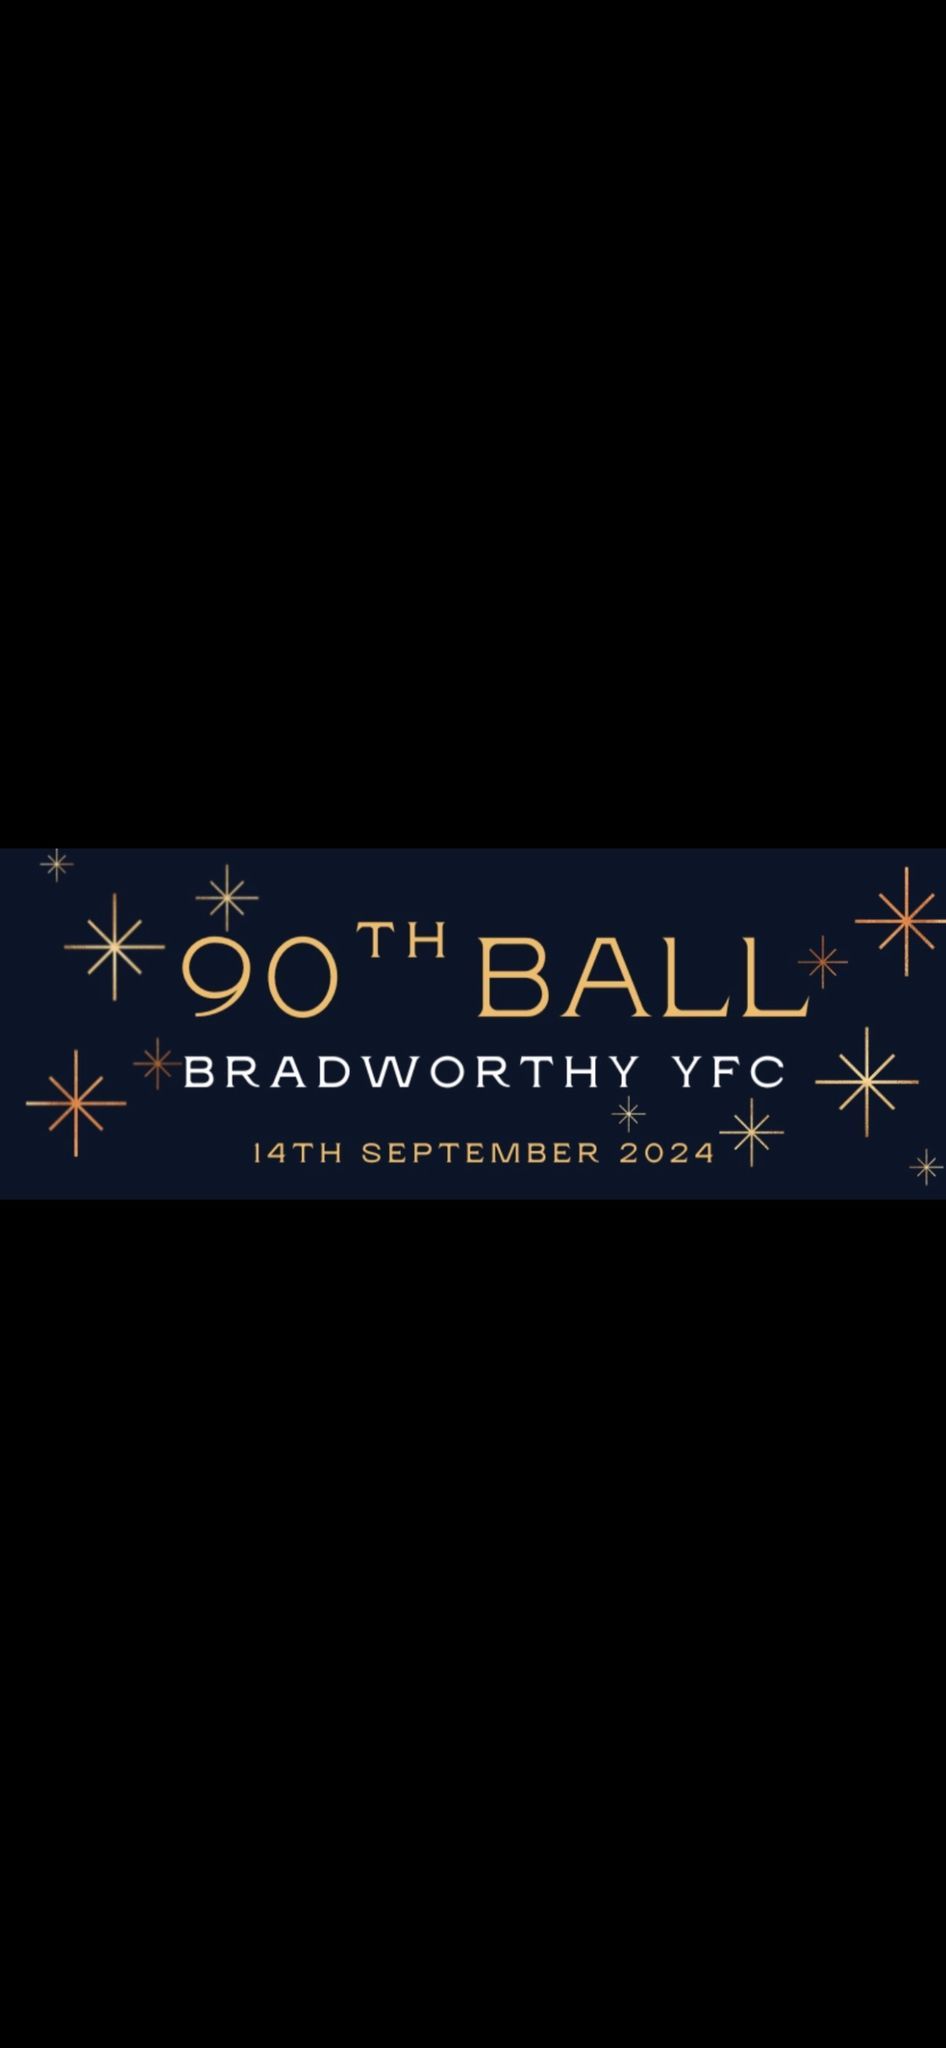 Bradworthy YFC 90th Ball 